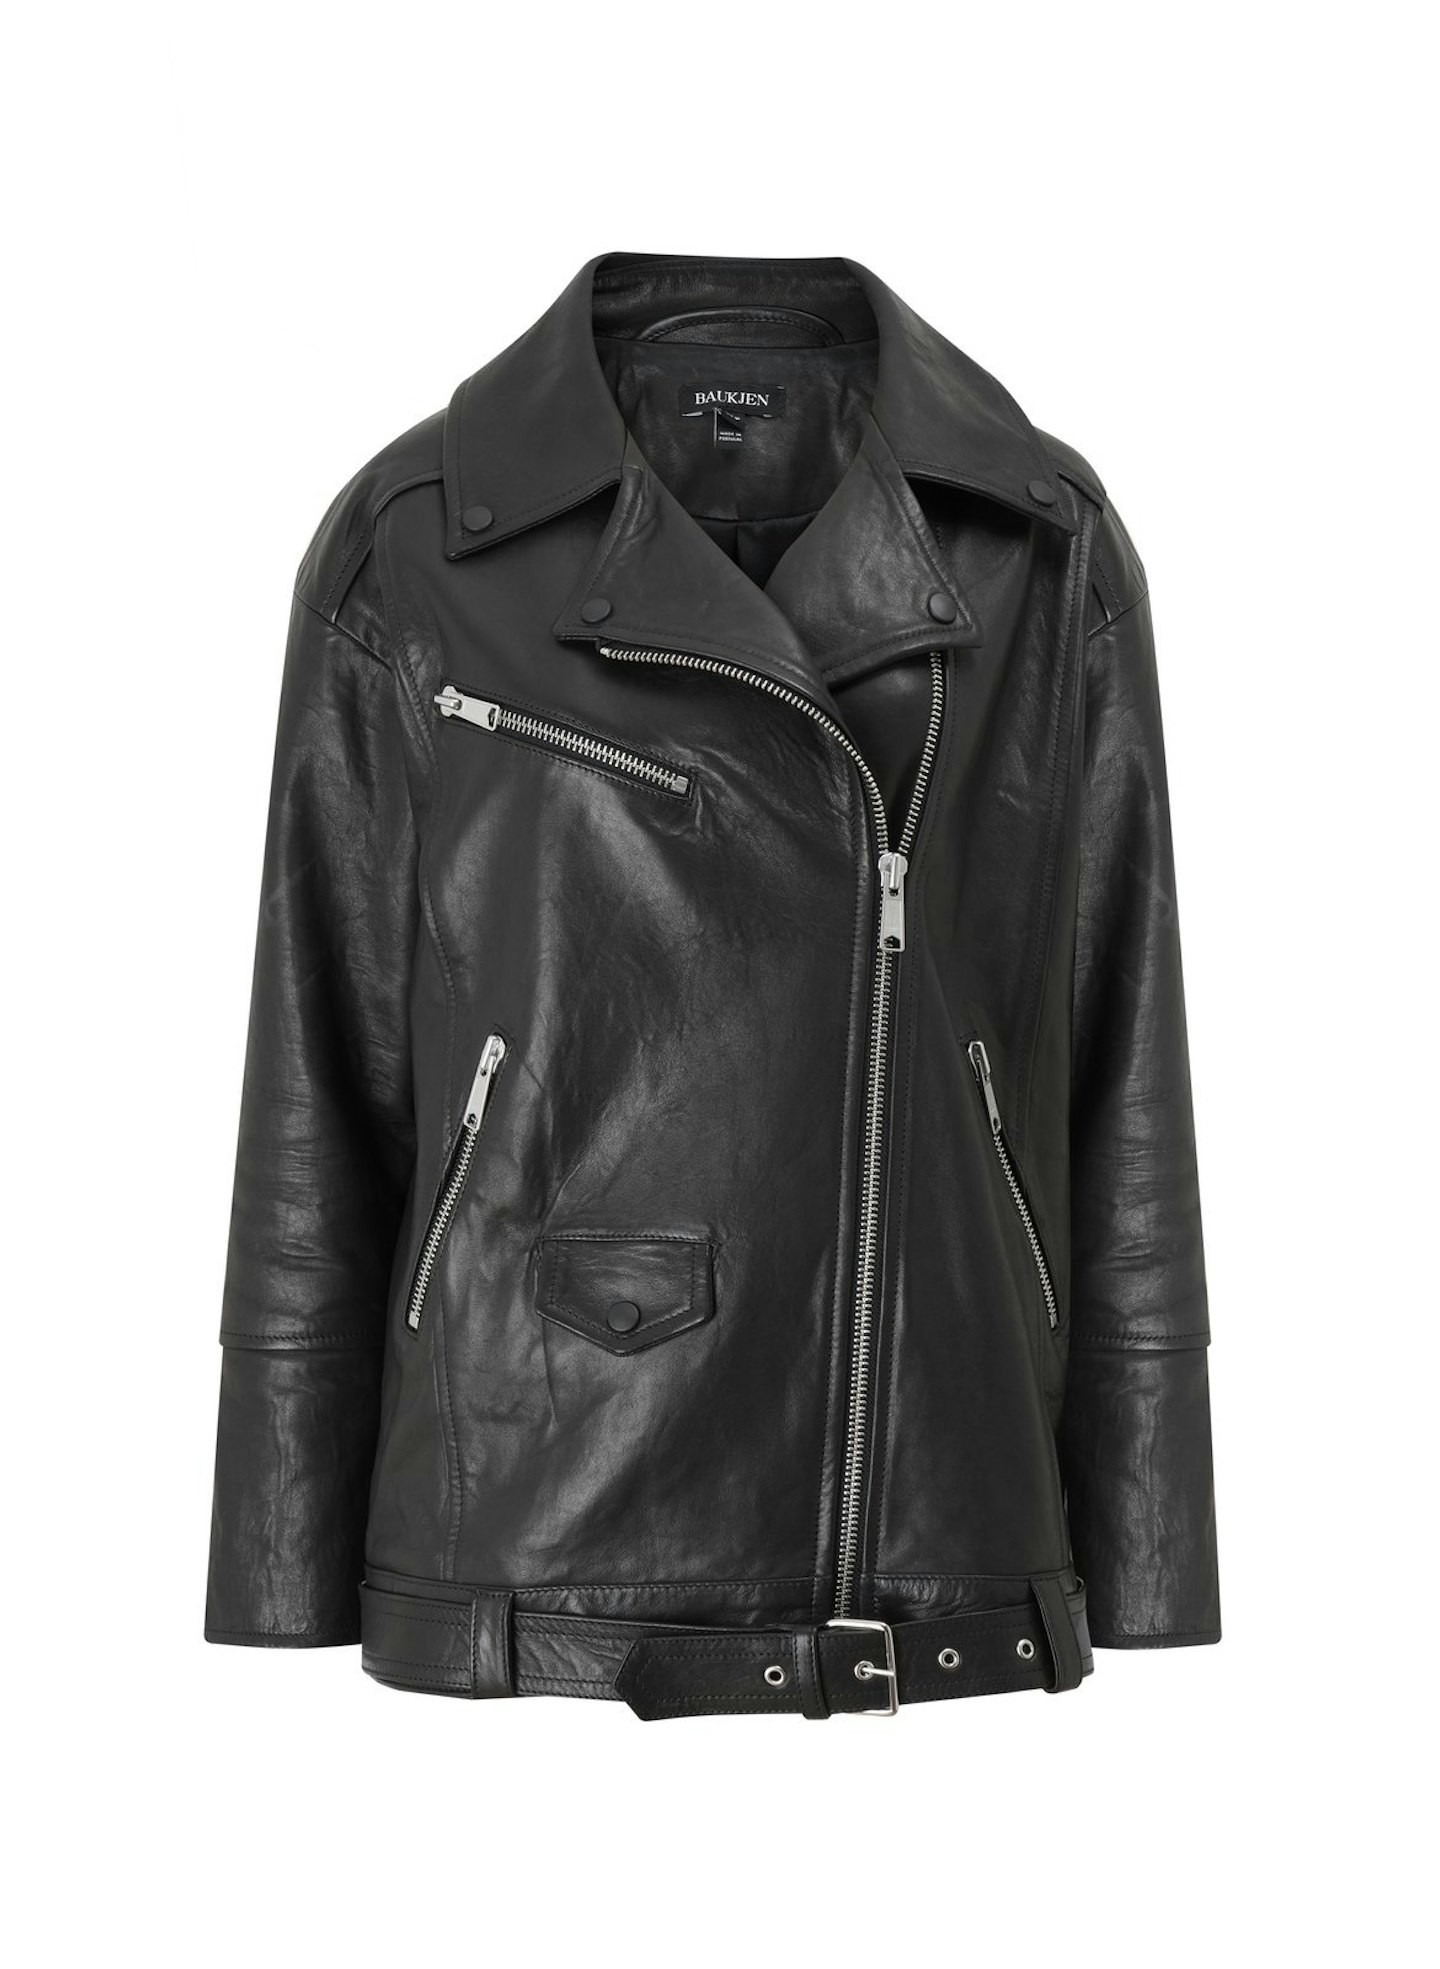 Baukjen, Vegetable Tanned Leather Biker Jacket, £489